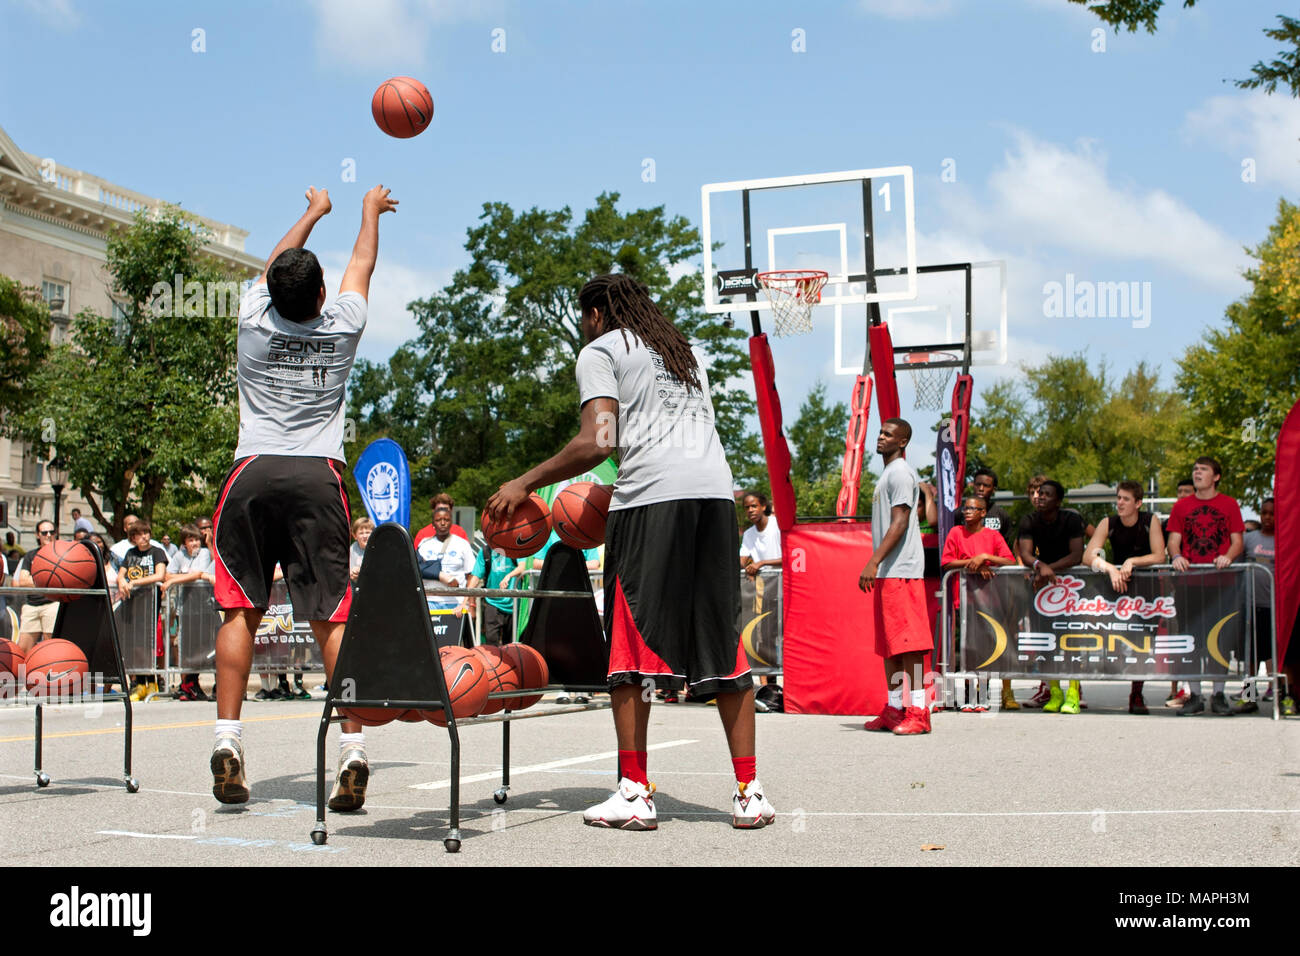 Ein junger Mann nimmt an der drei-Punkt Schuß Wettbewerb, der Teil eines 3-on-3 Basketball Turnier in der Innenstadt von Athen, GA am 24. August 2013 war. Stockfoto